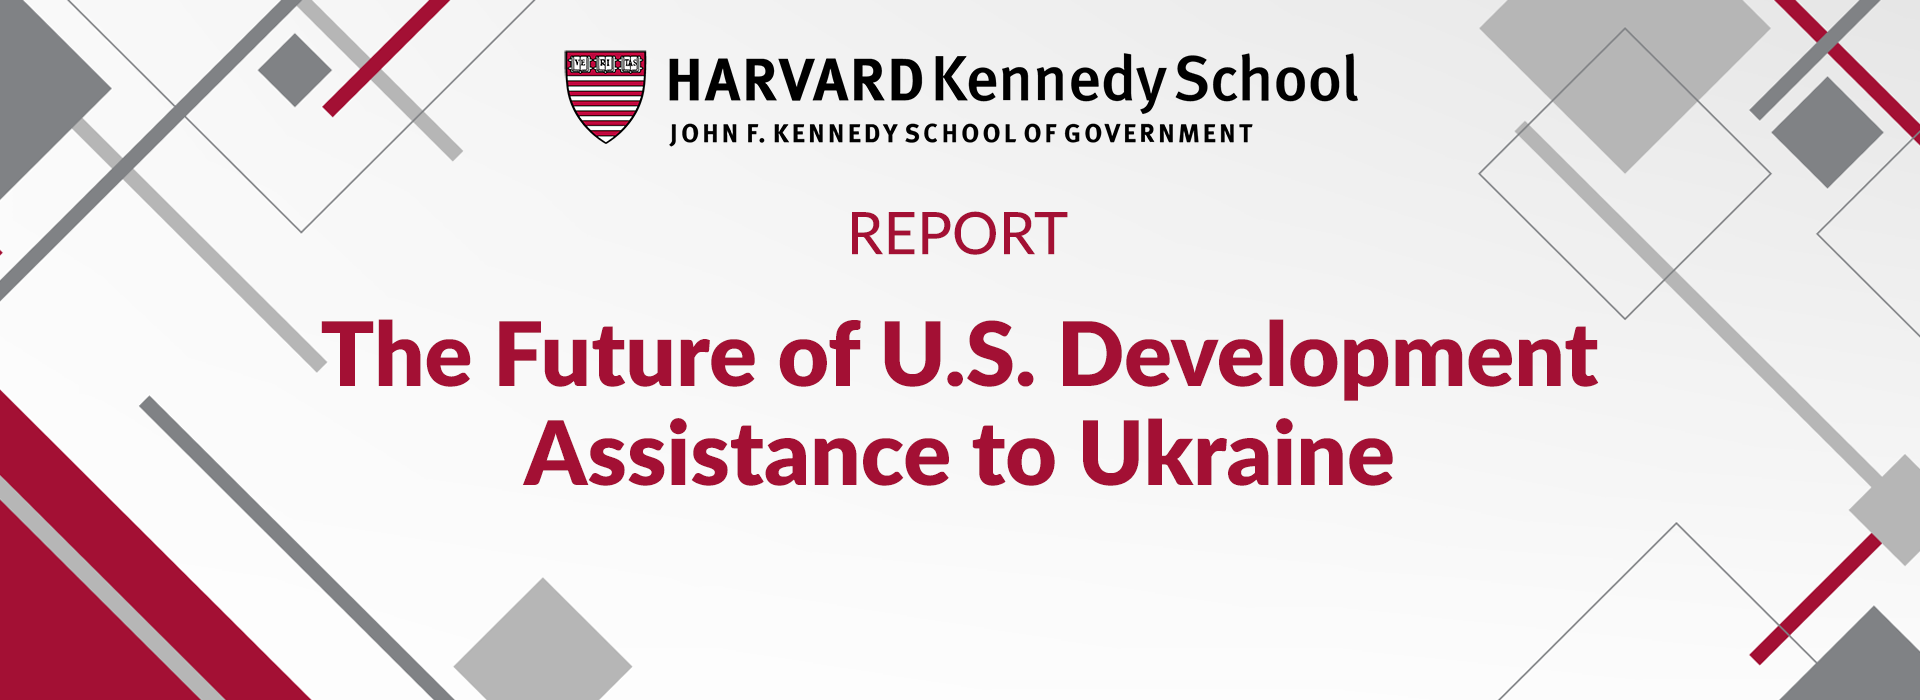 Майбутнє допомоги США для розвитку України  – Звіт Гарвардської школи Кеннеді